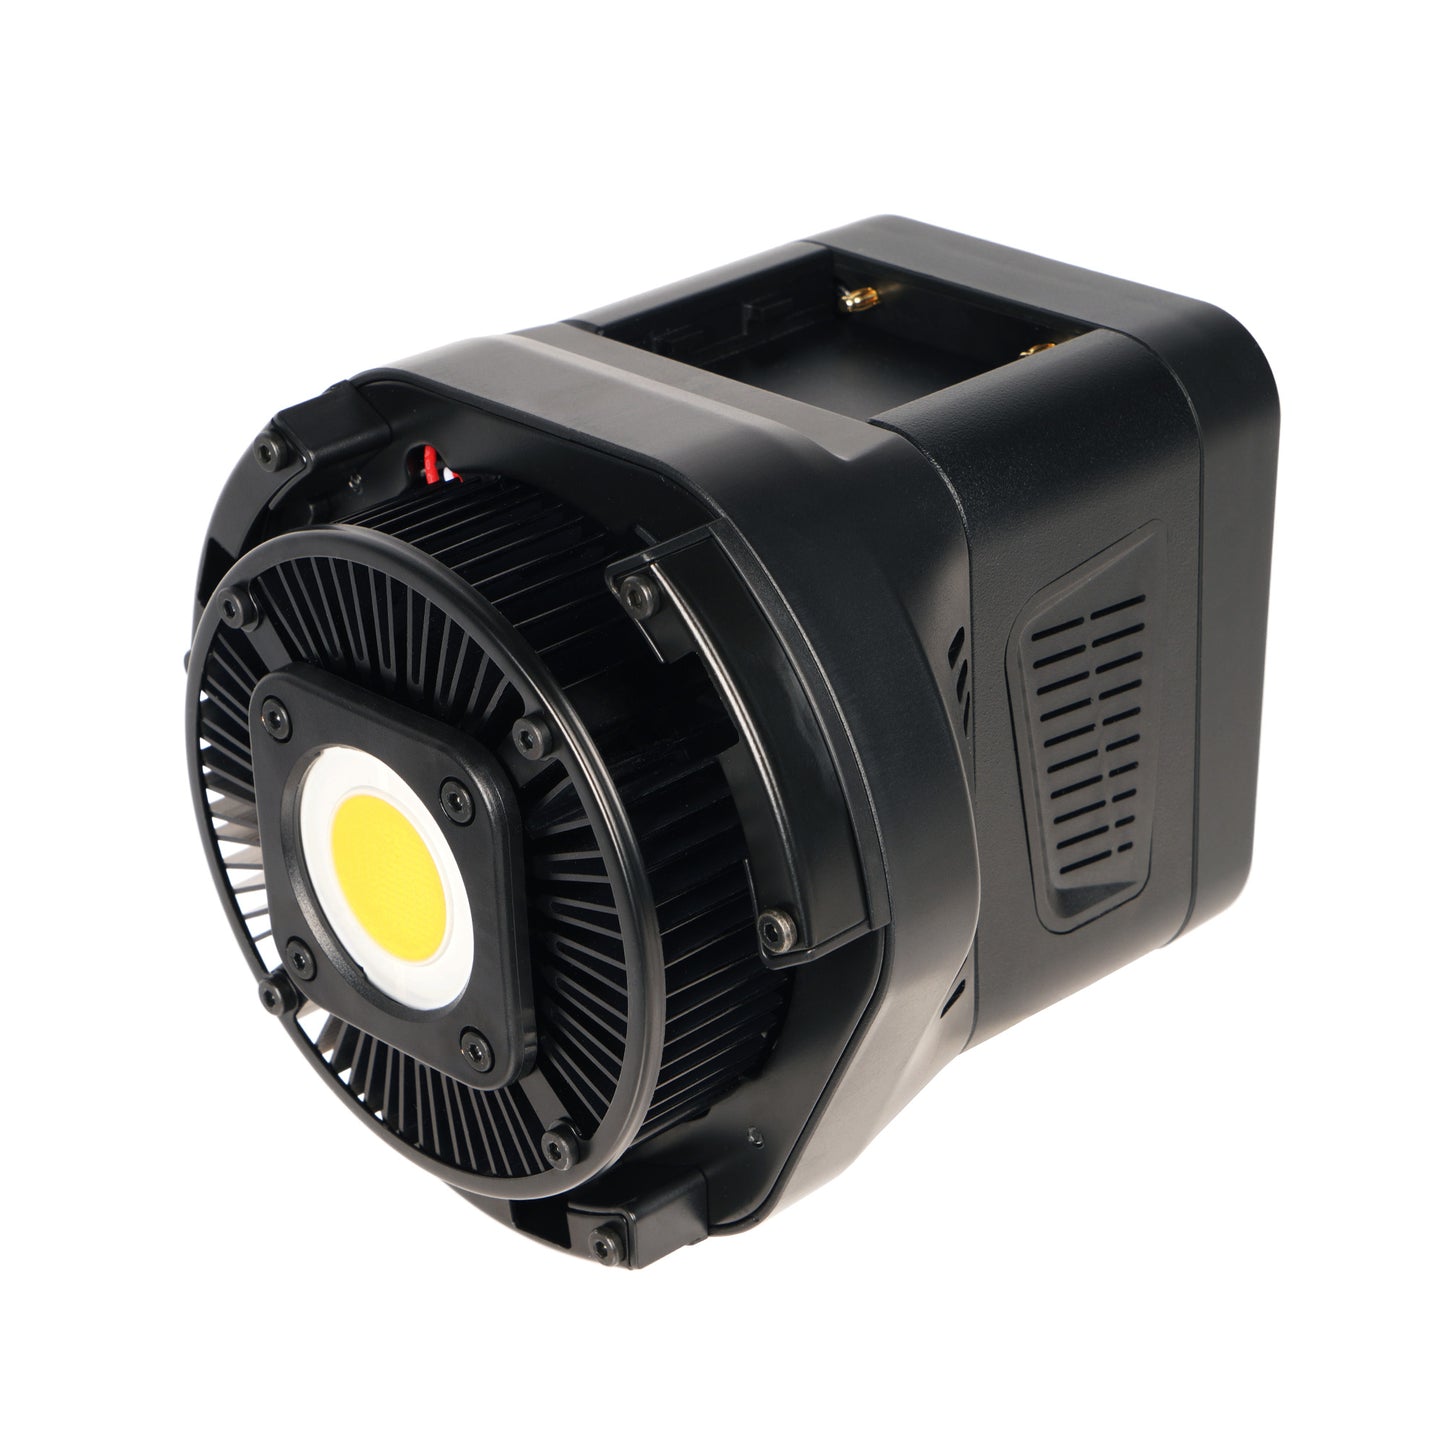 SIRUI C60 LED-Dauerlicht 60W - superleise 20dB - Foto- + Videoleuchte